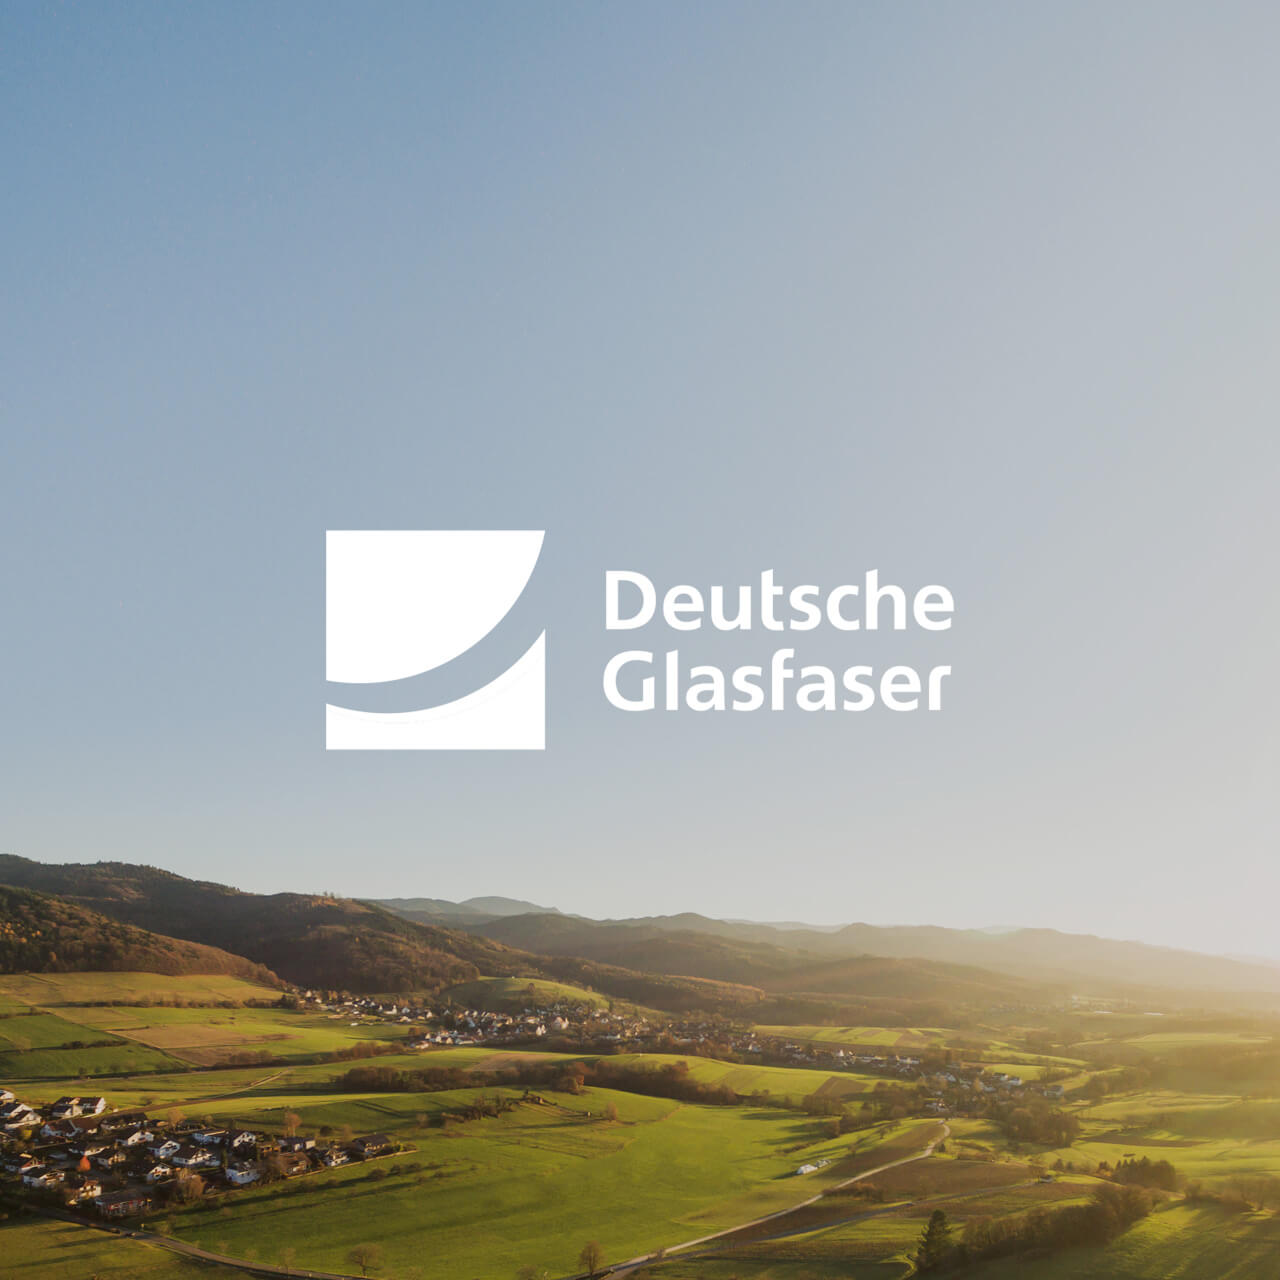 Deutsche Glasfaser Logo mit ländlichem Hintergrund